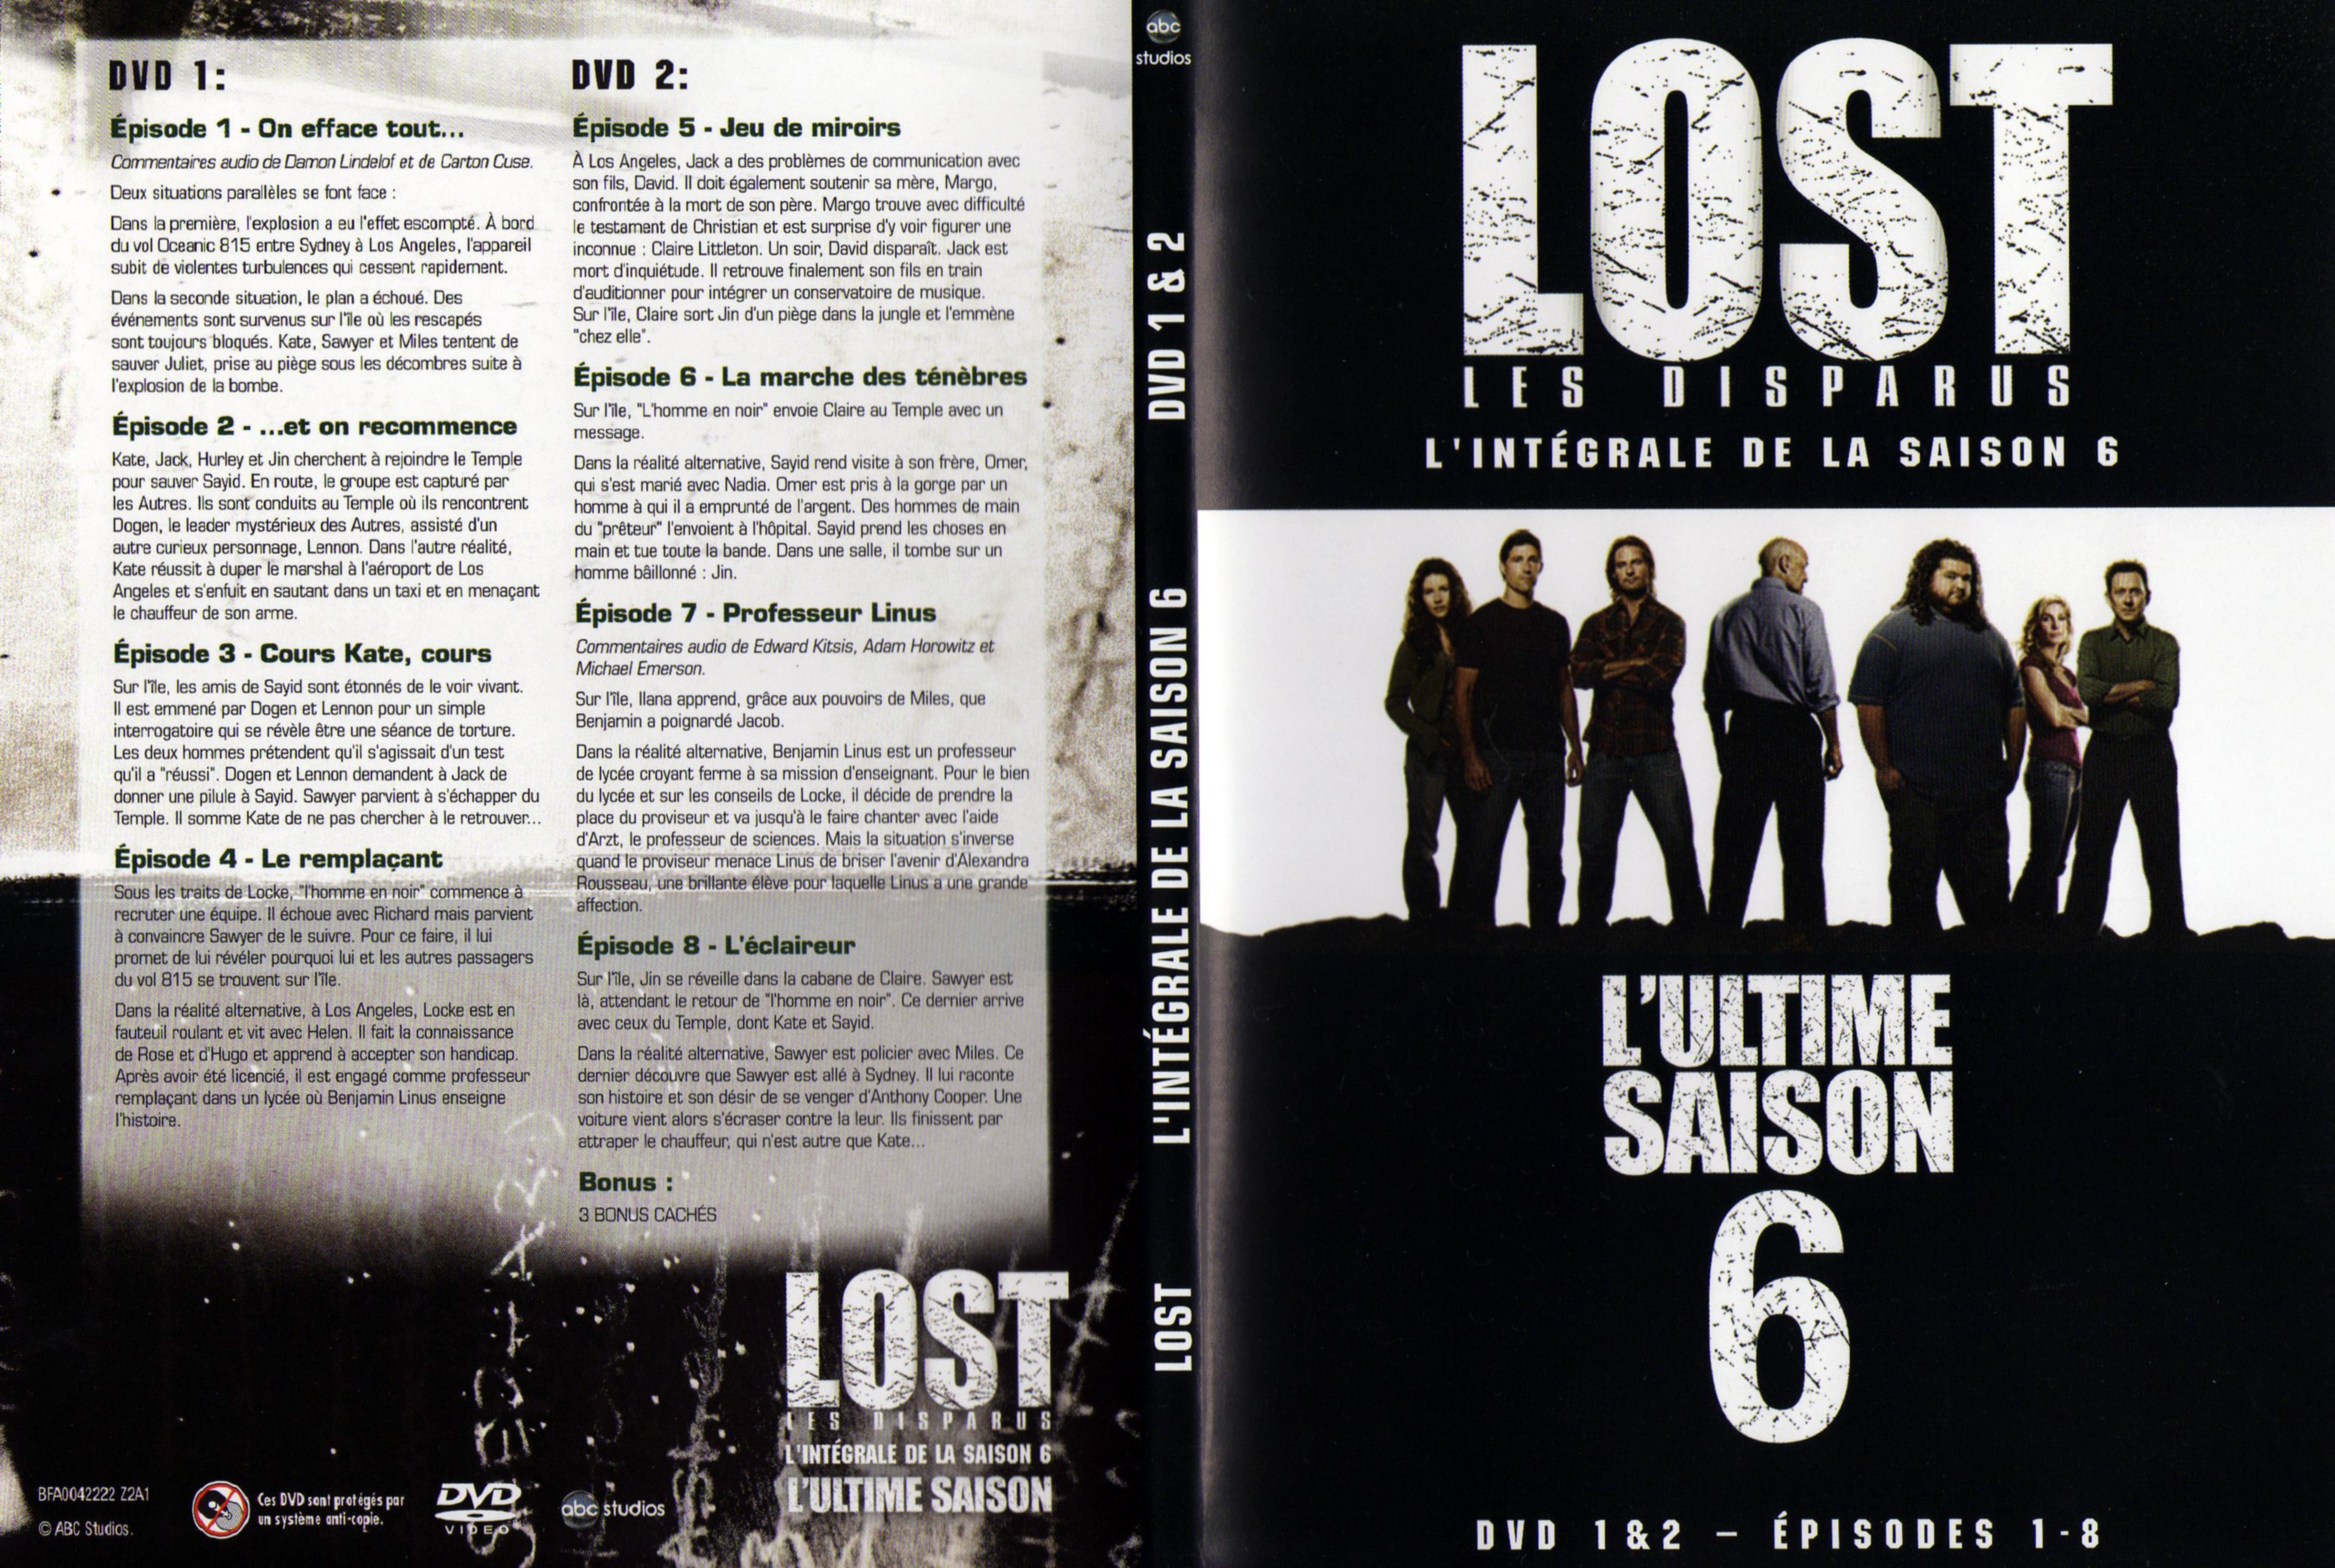 Jaquette DVD Lost Saison 6 DVD 1